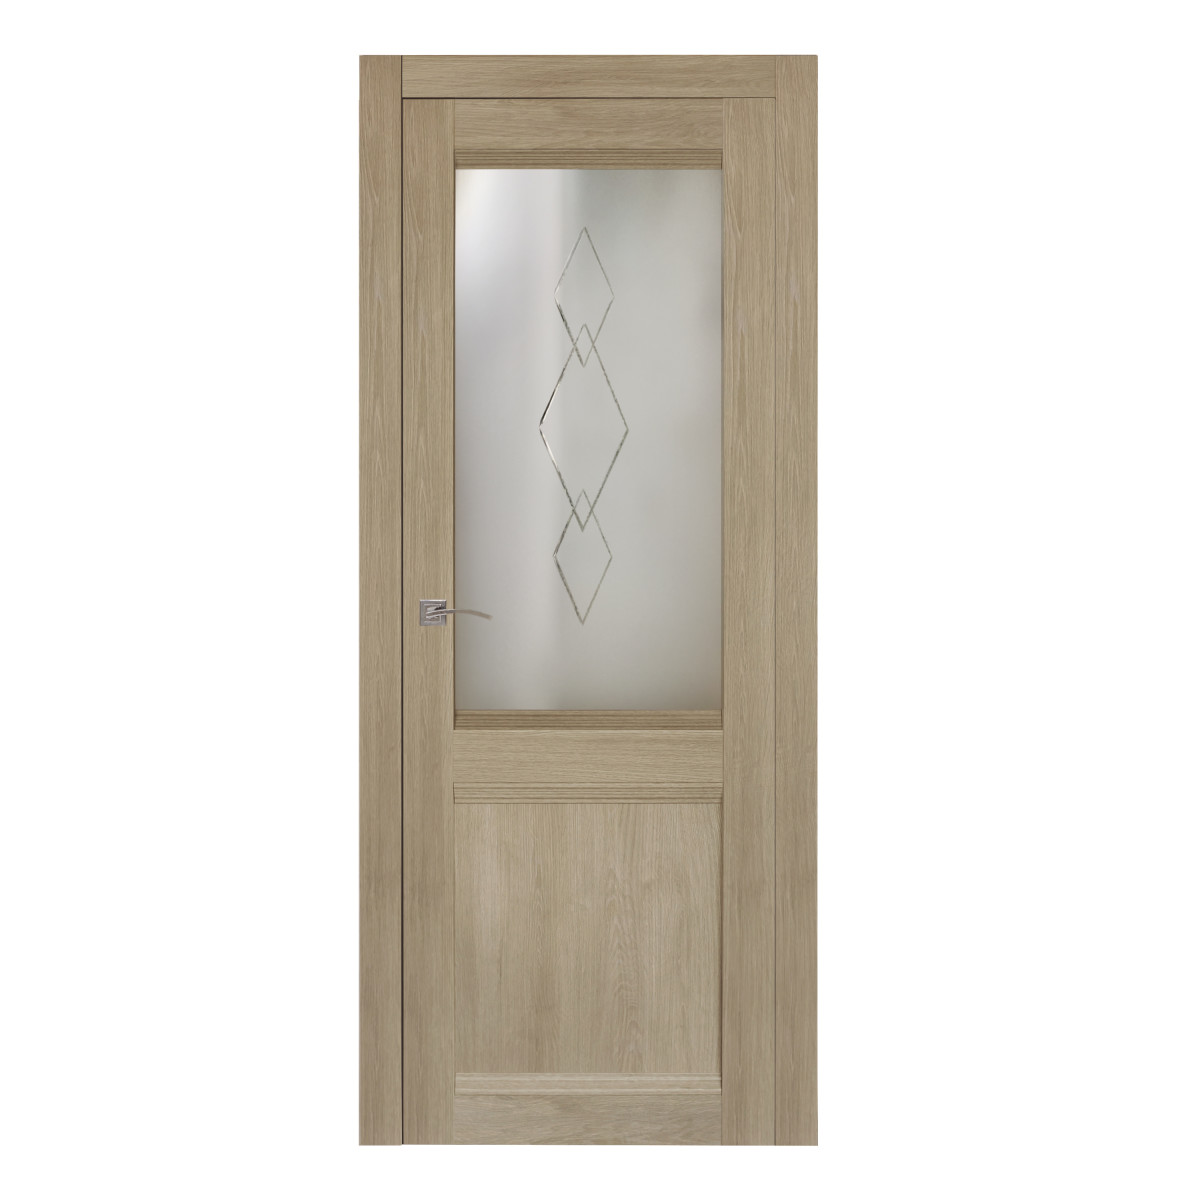 Дверь межкомнатная остеклённая Арагона с фурнитурой 70х200 см цвет дуб тёрнер